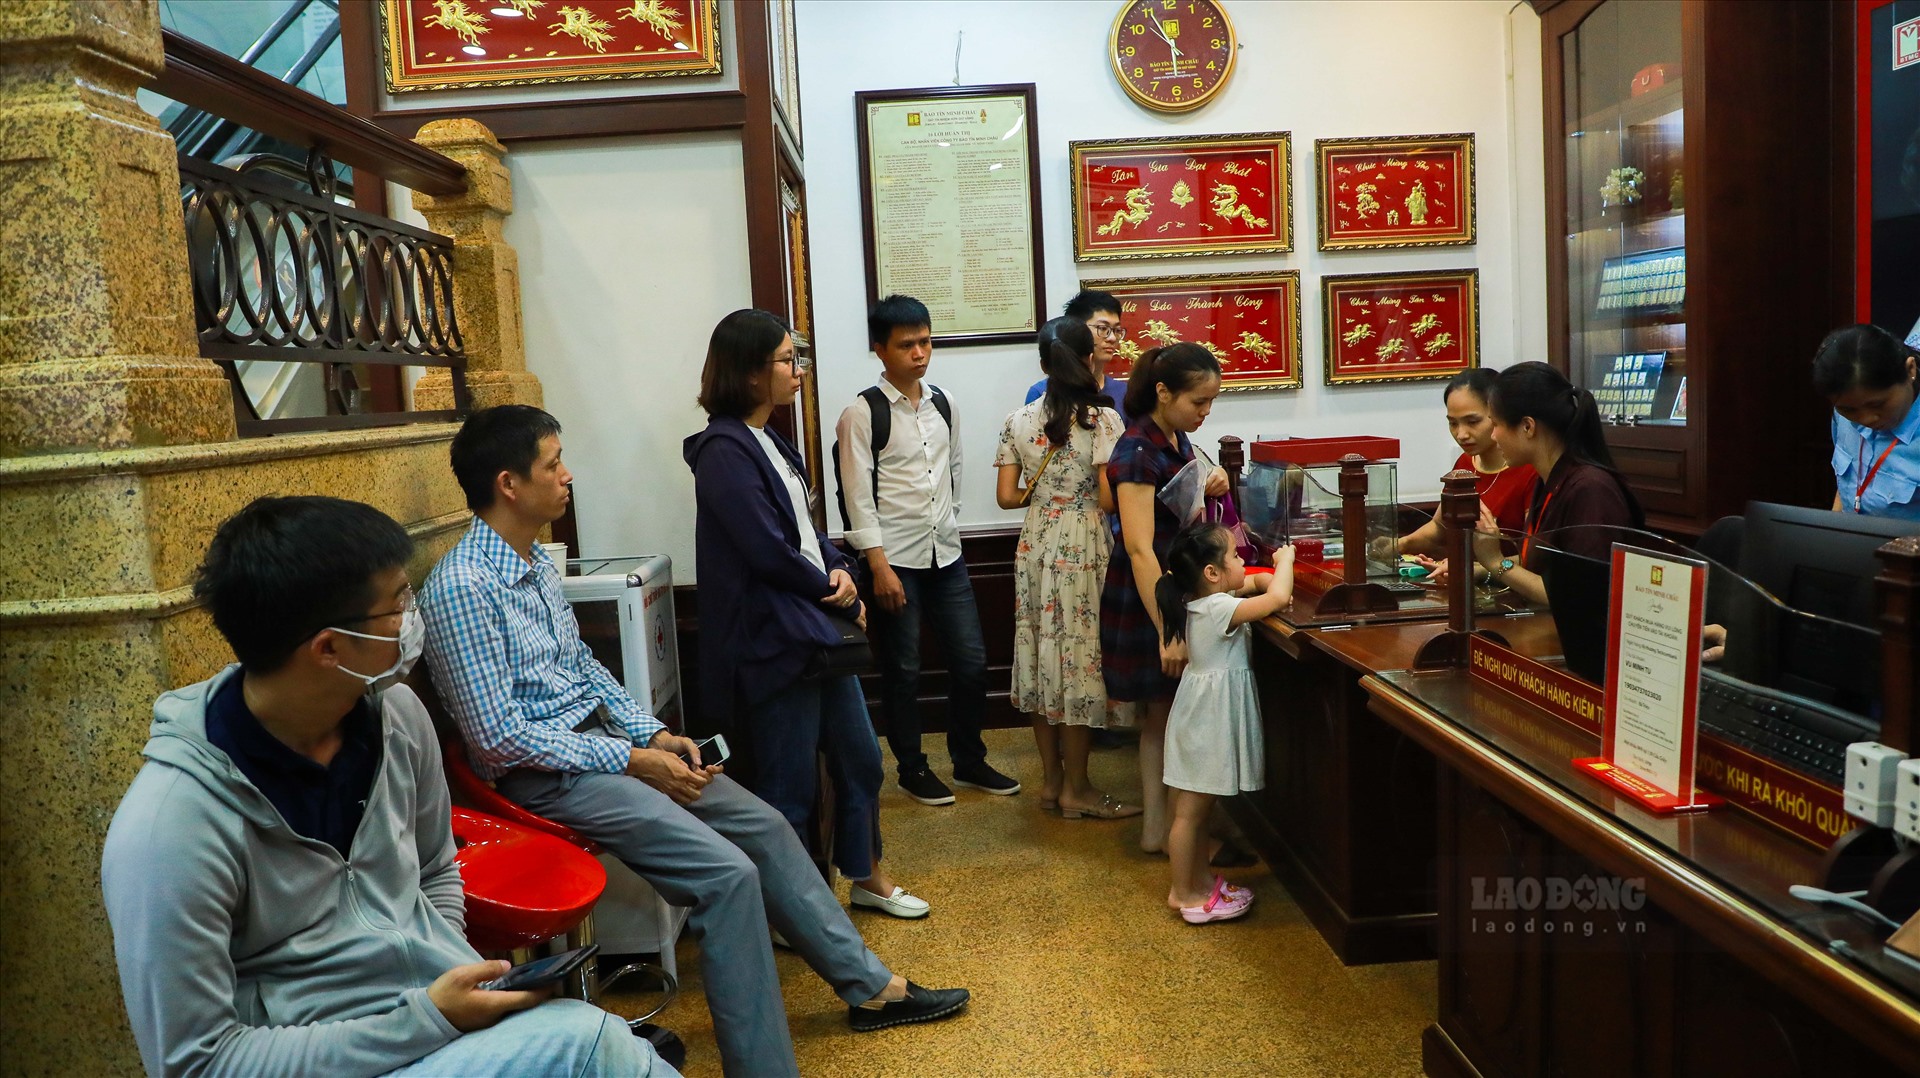 Ghi nhận của PV Lao Động tại một số đơn vị kinh doanh vàng trên địa bàn Hà Nội vào chiều ngày 9.7, lượng khách giao dịch rất đông.